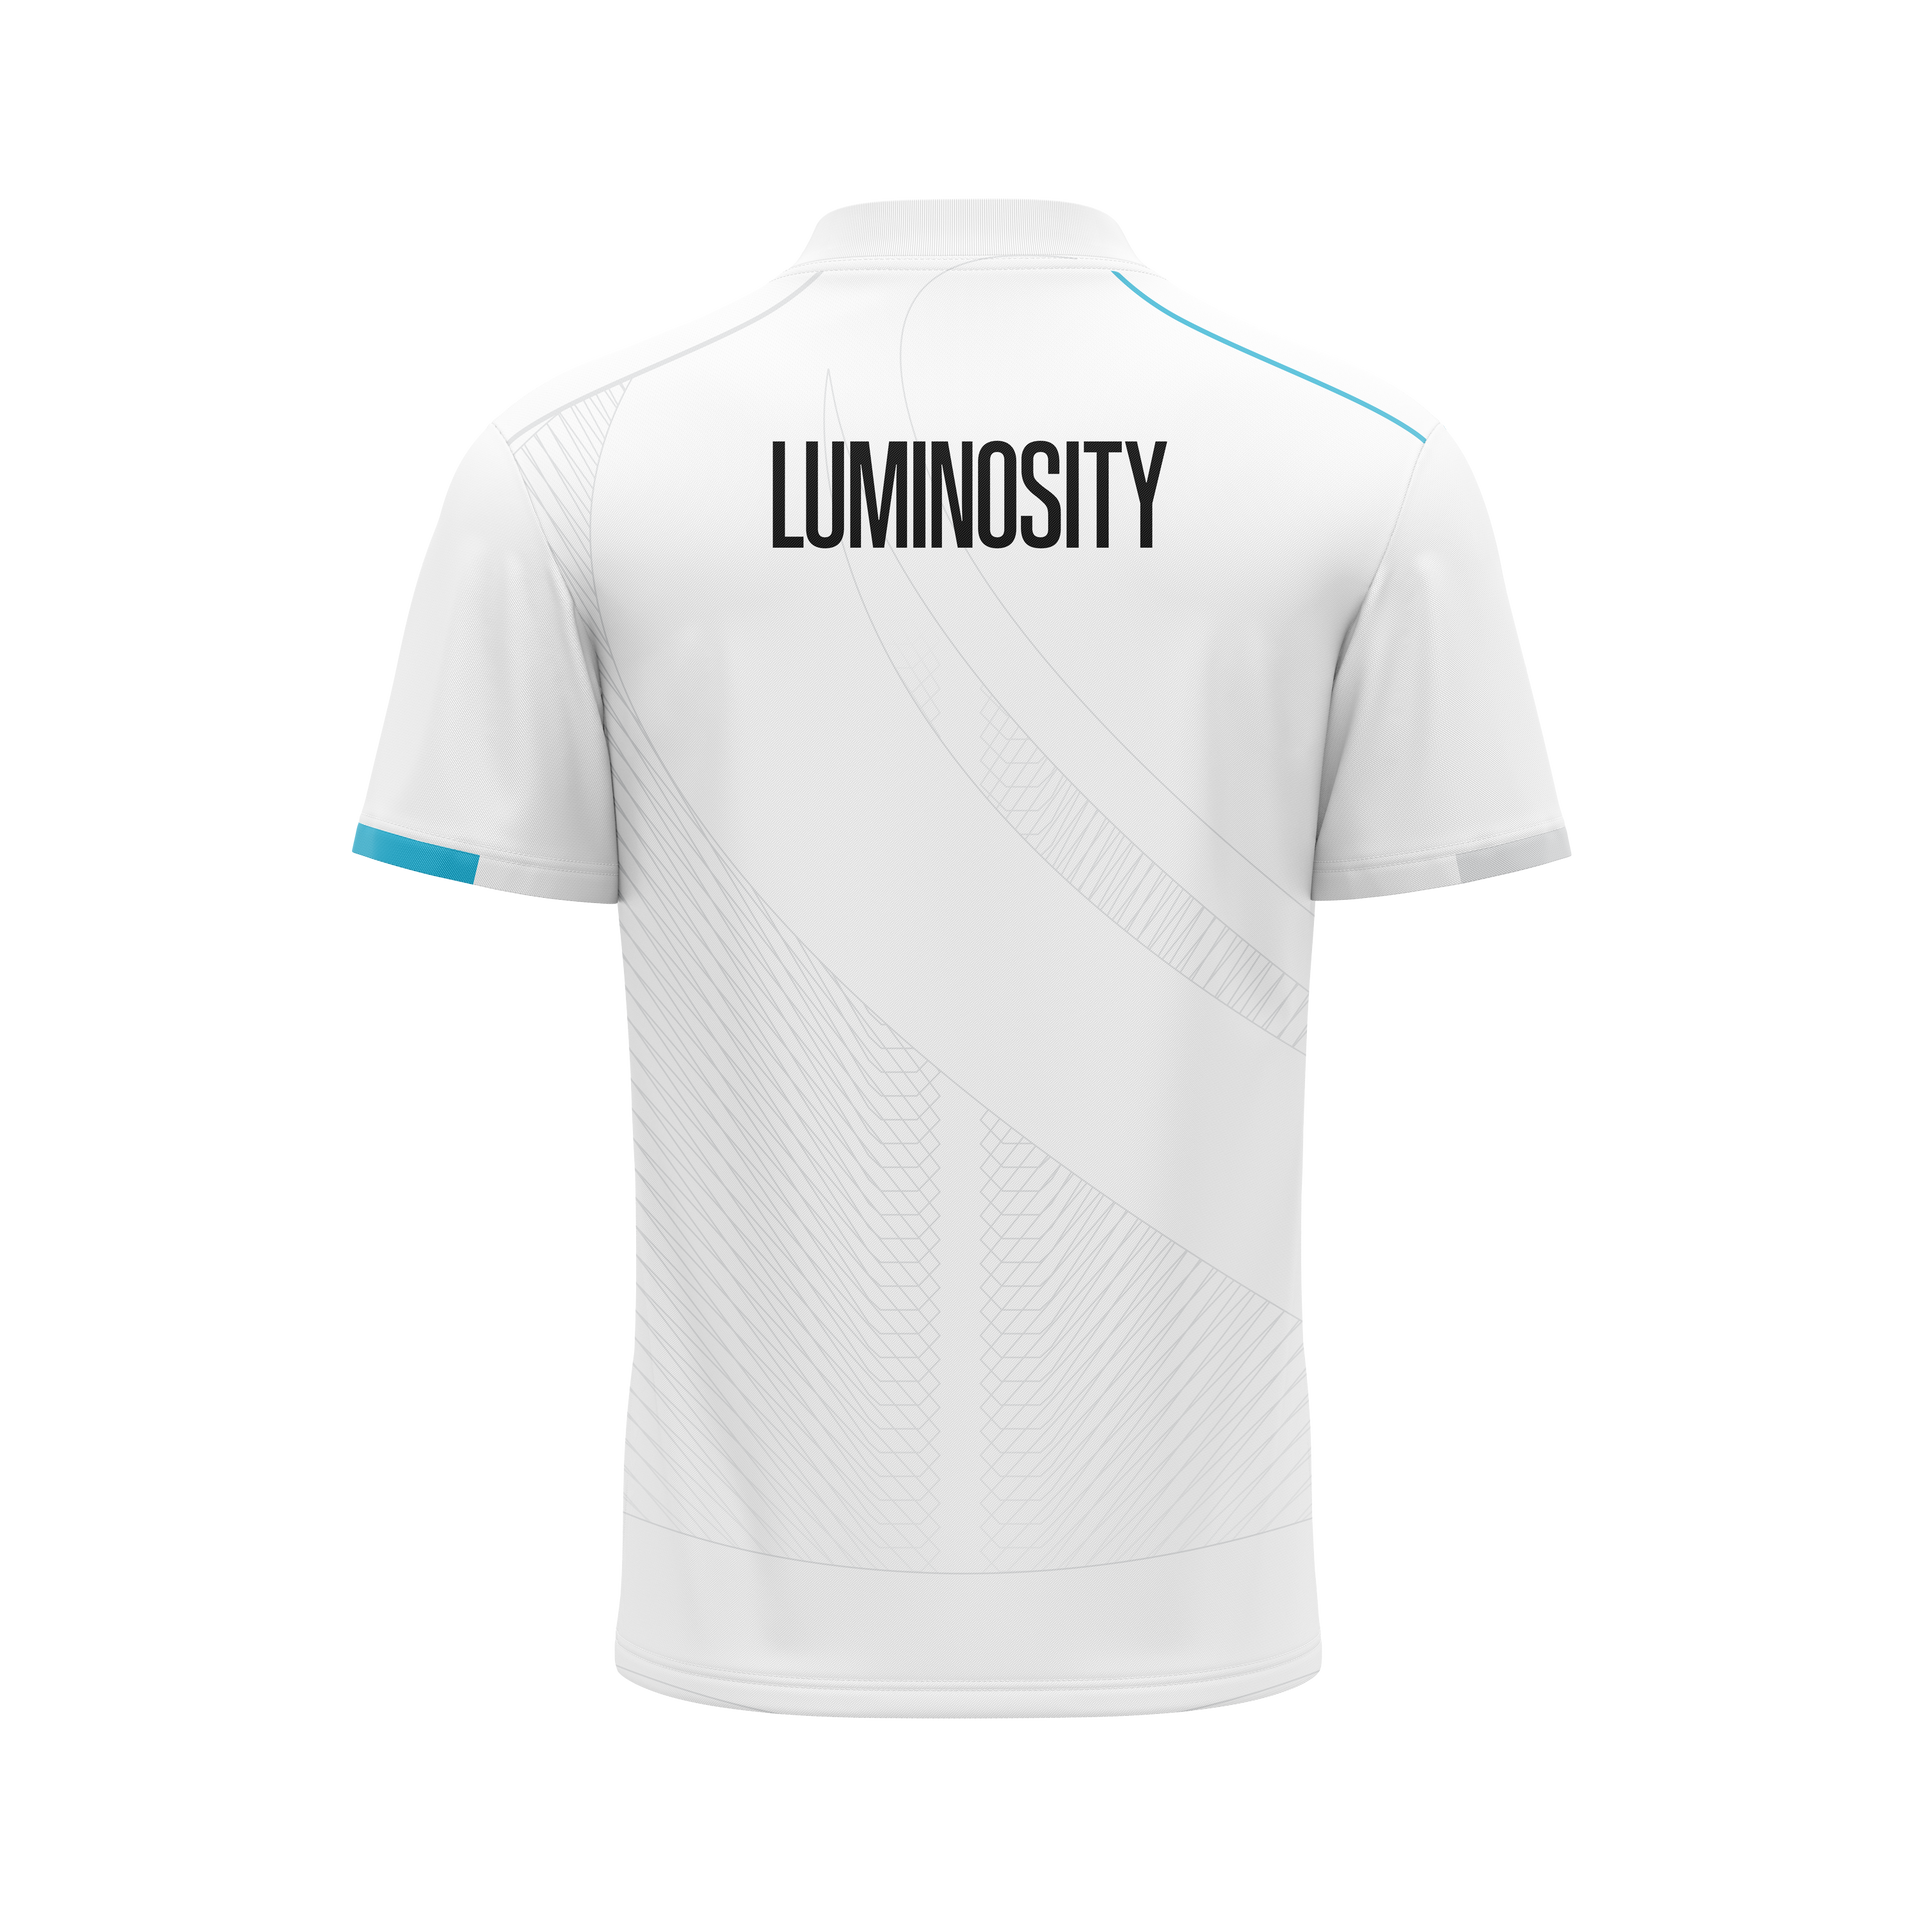 Luminosity Jersey - White